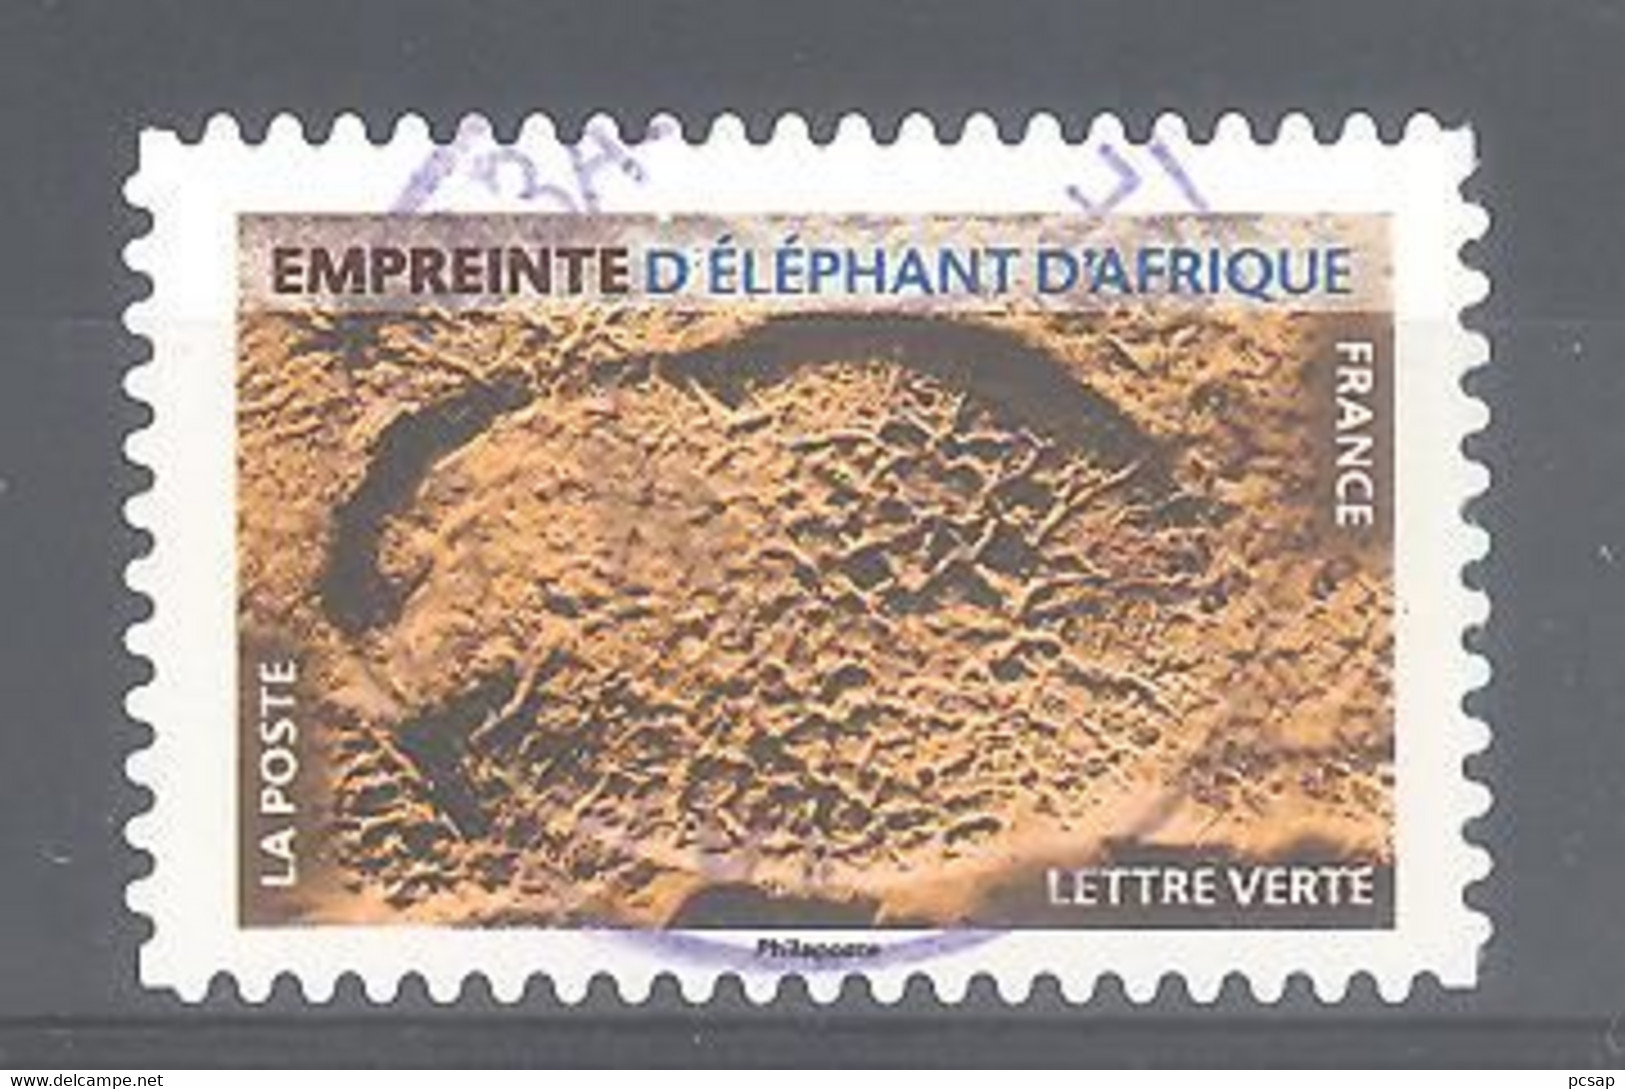 France Autoadhésif Oblitéré N°1964 (Empreinte D'éléphant D'Afrique) (cachet Rond) - Gebraucht